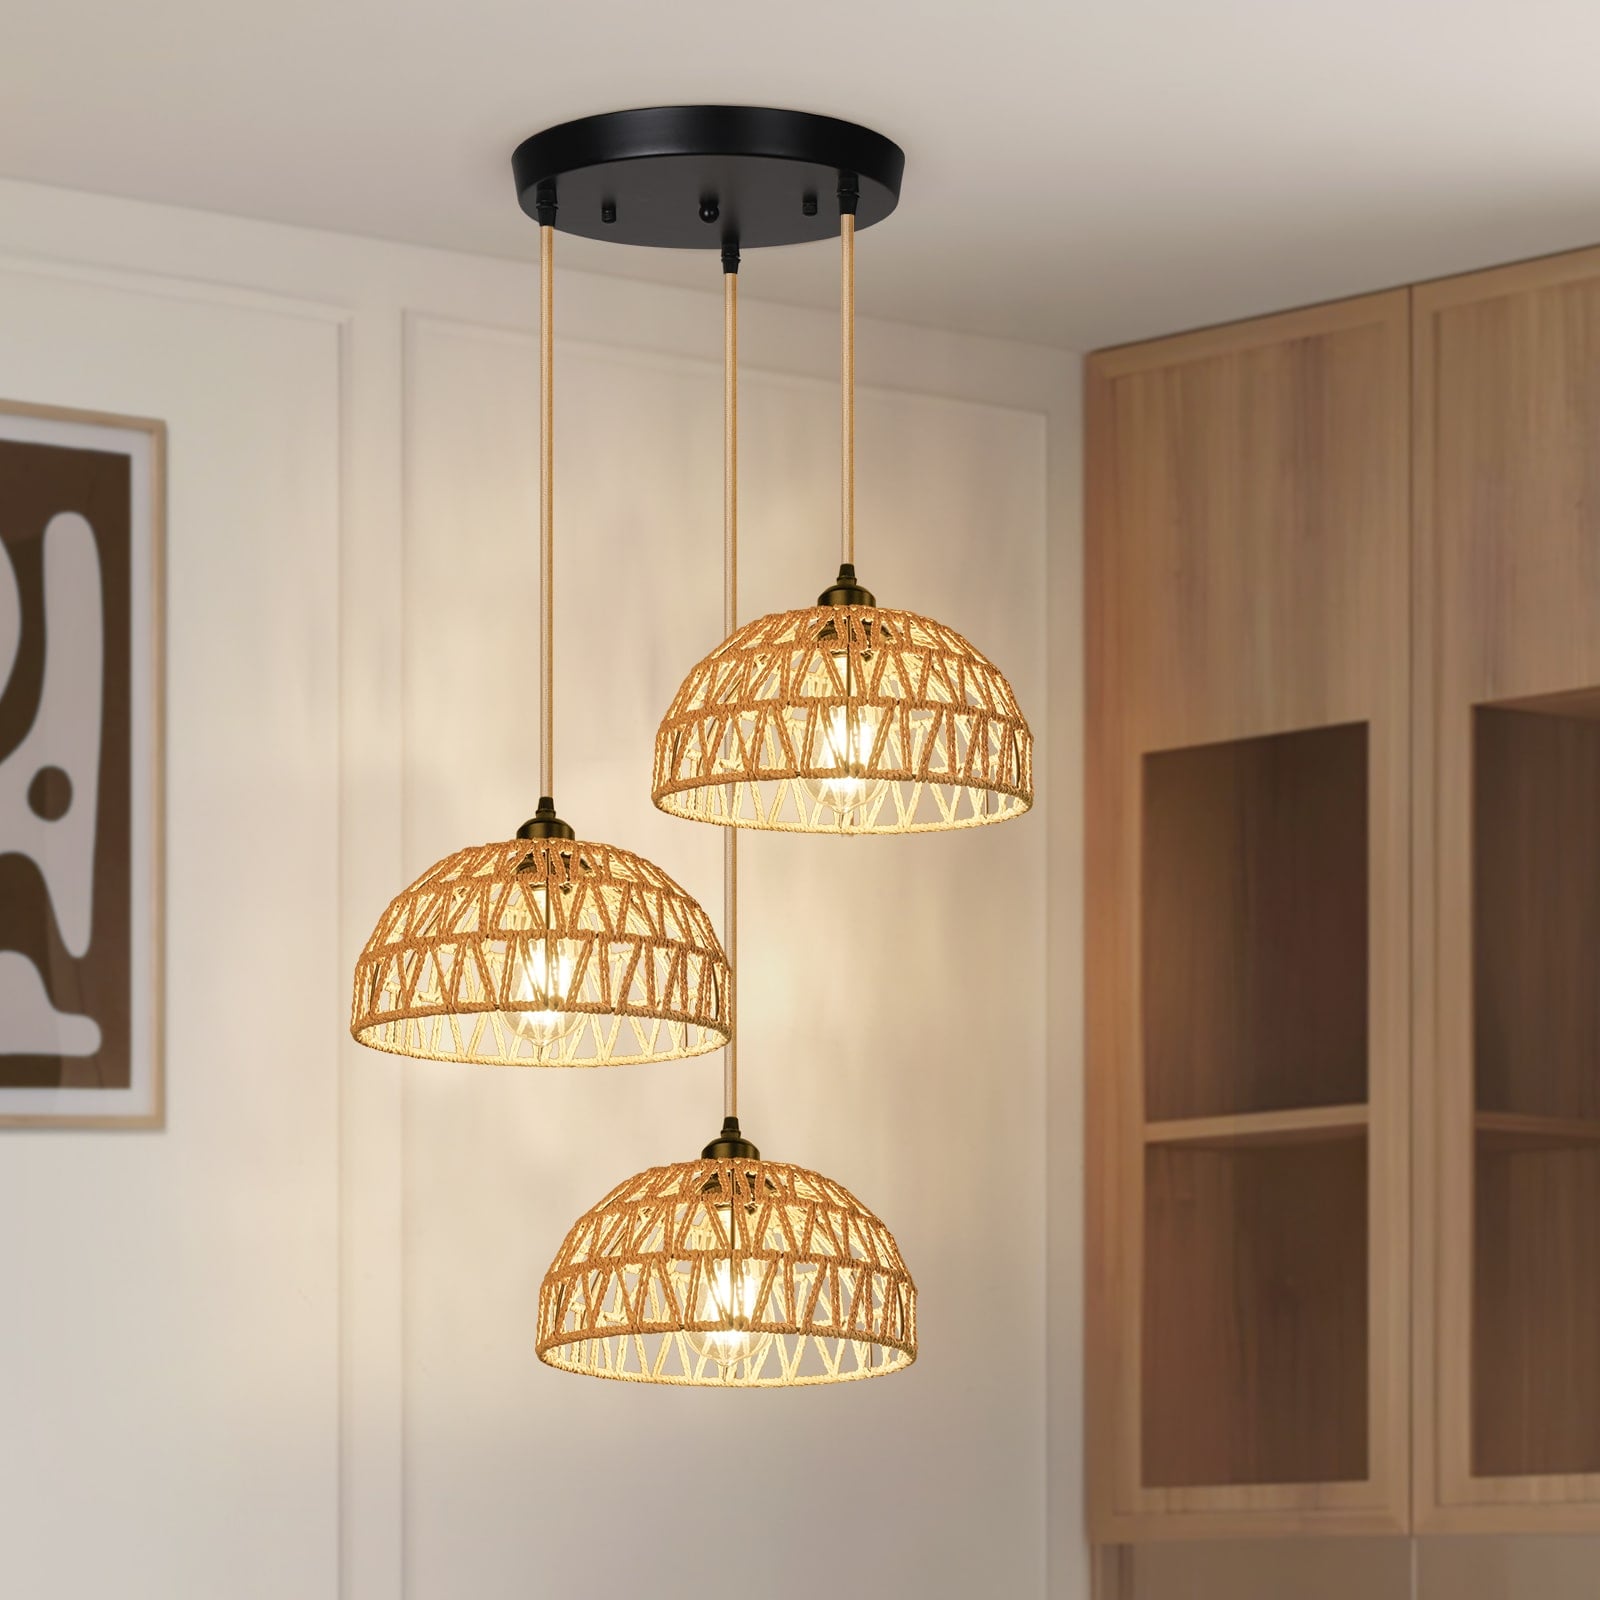 N05 3-Lights Natural Rattan Lantern Pendant Light for Living Room